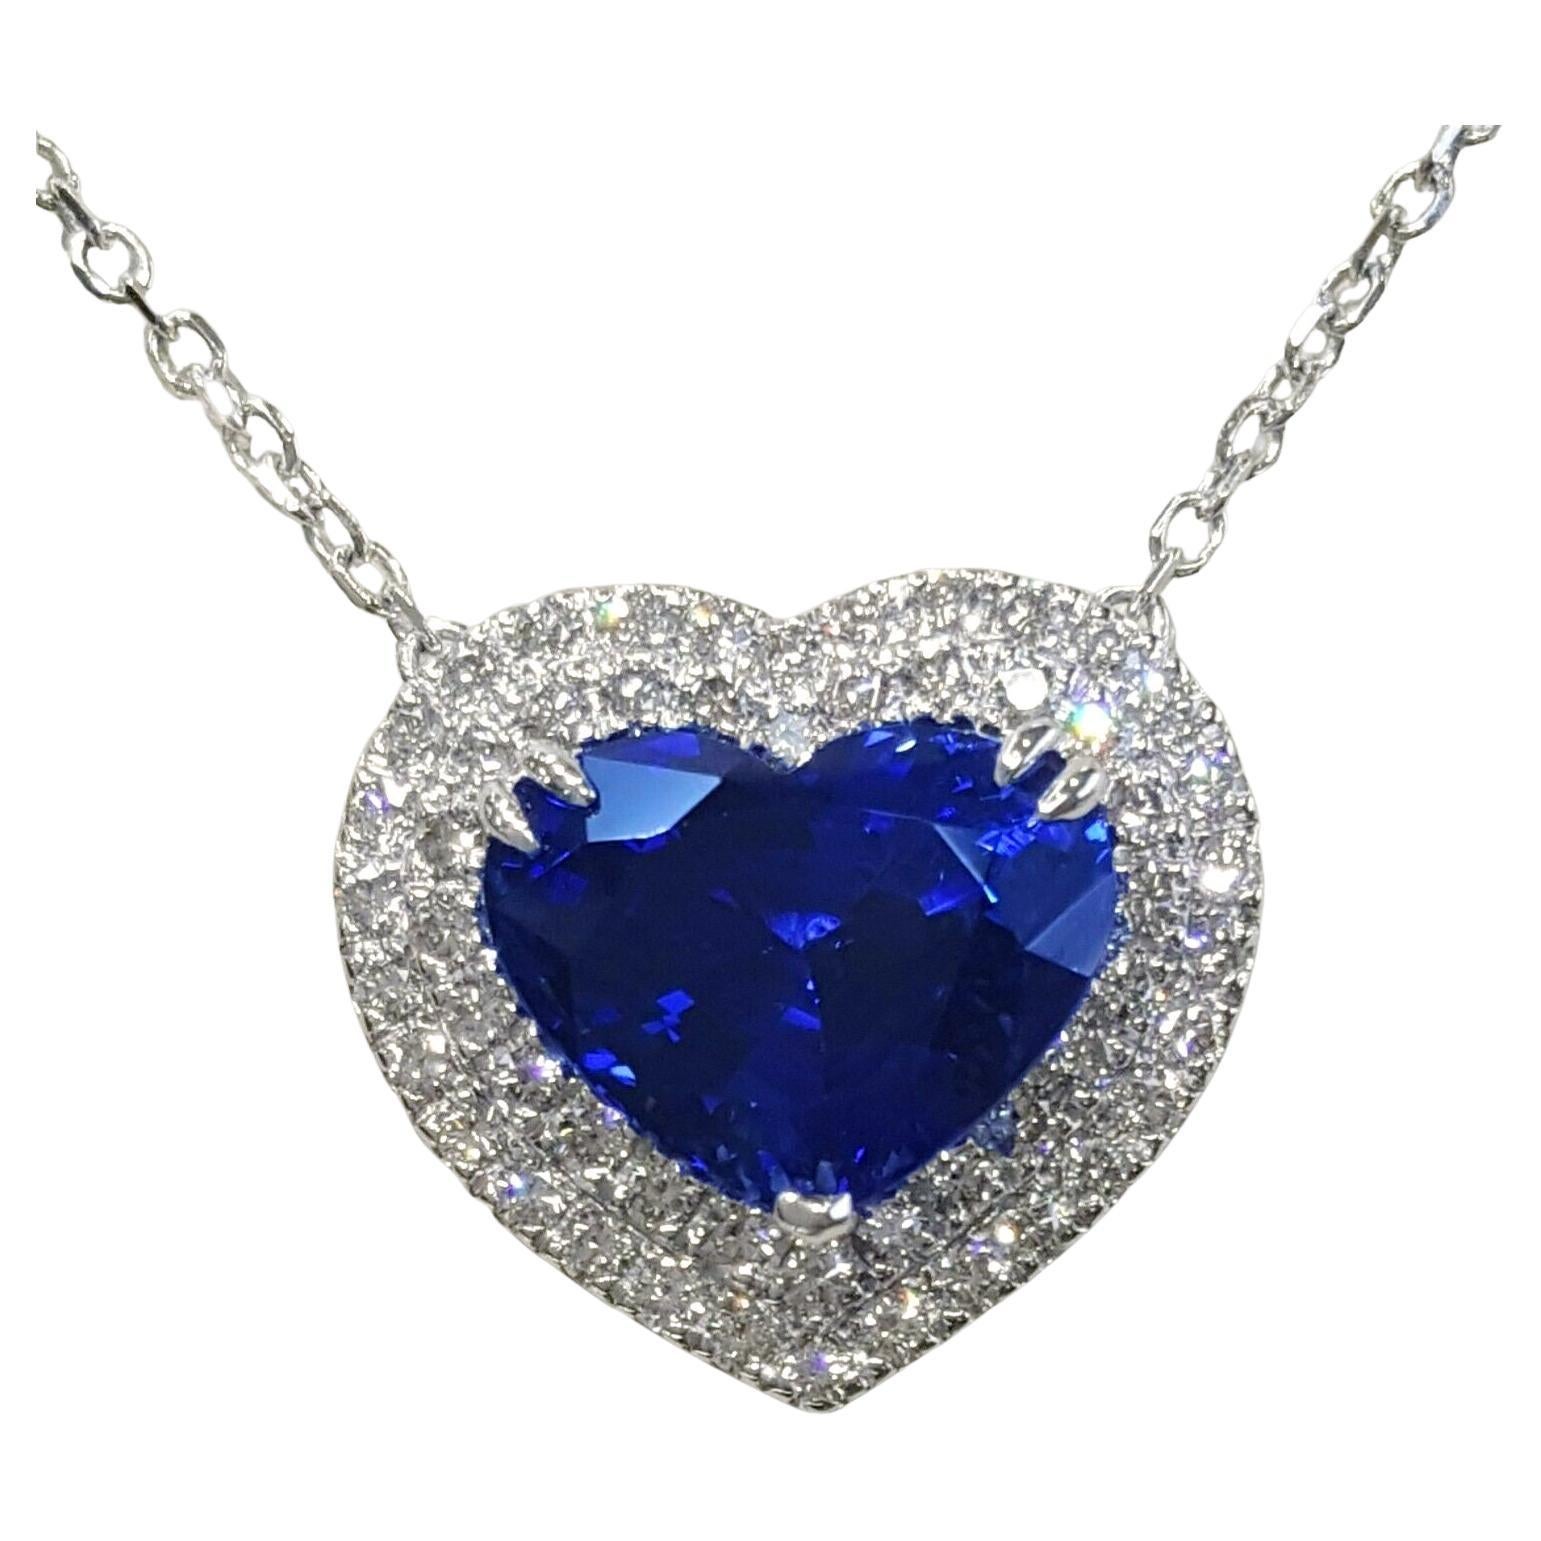 Collier pendentif en forme de cœur avec saphir bleu royal certifié de 6 carats